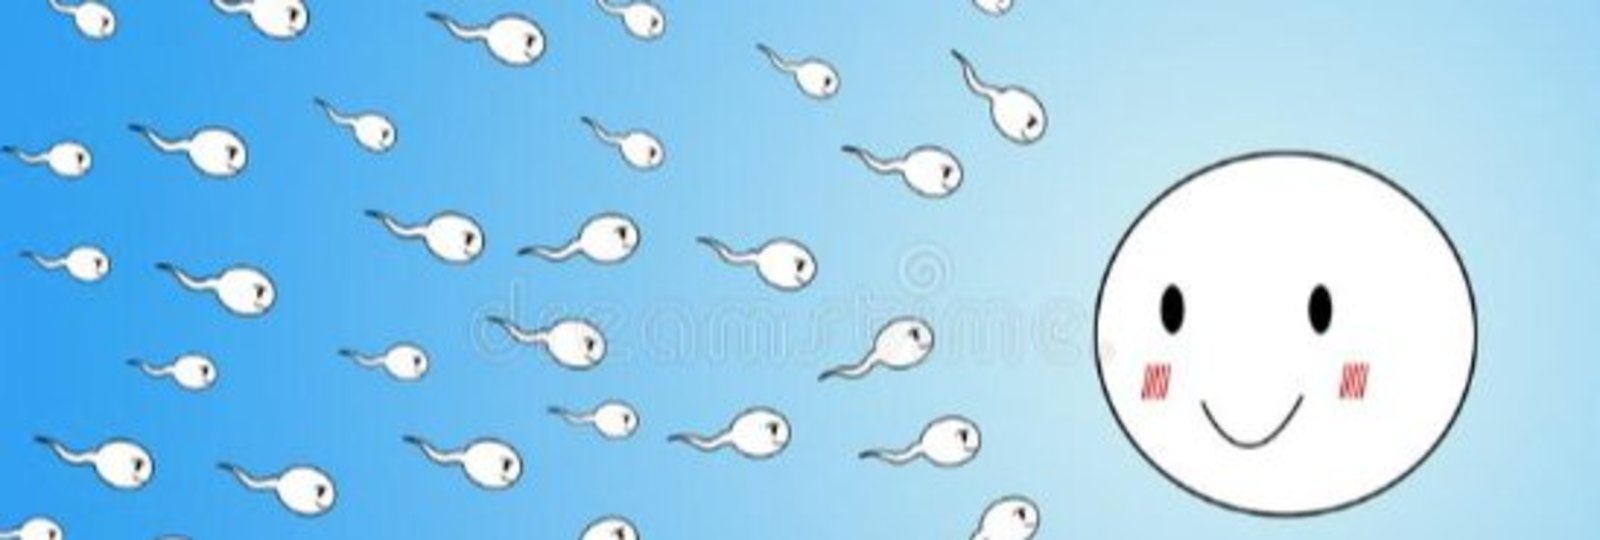 Egy, kettő, három, négy, kedves sperma fürge légy! (x)